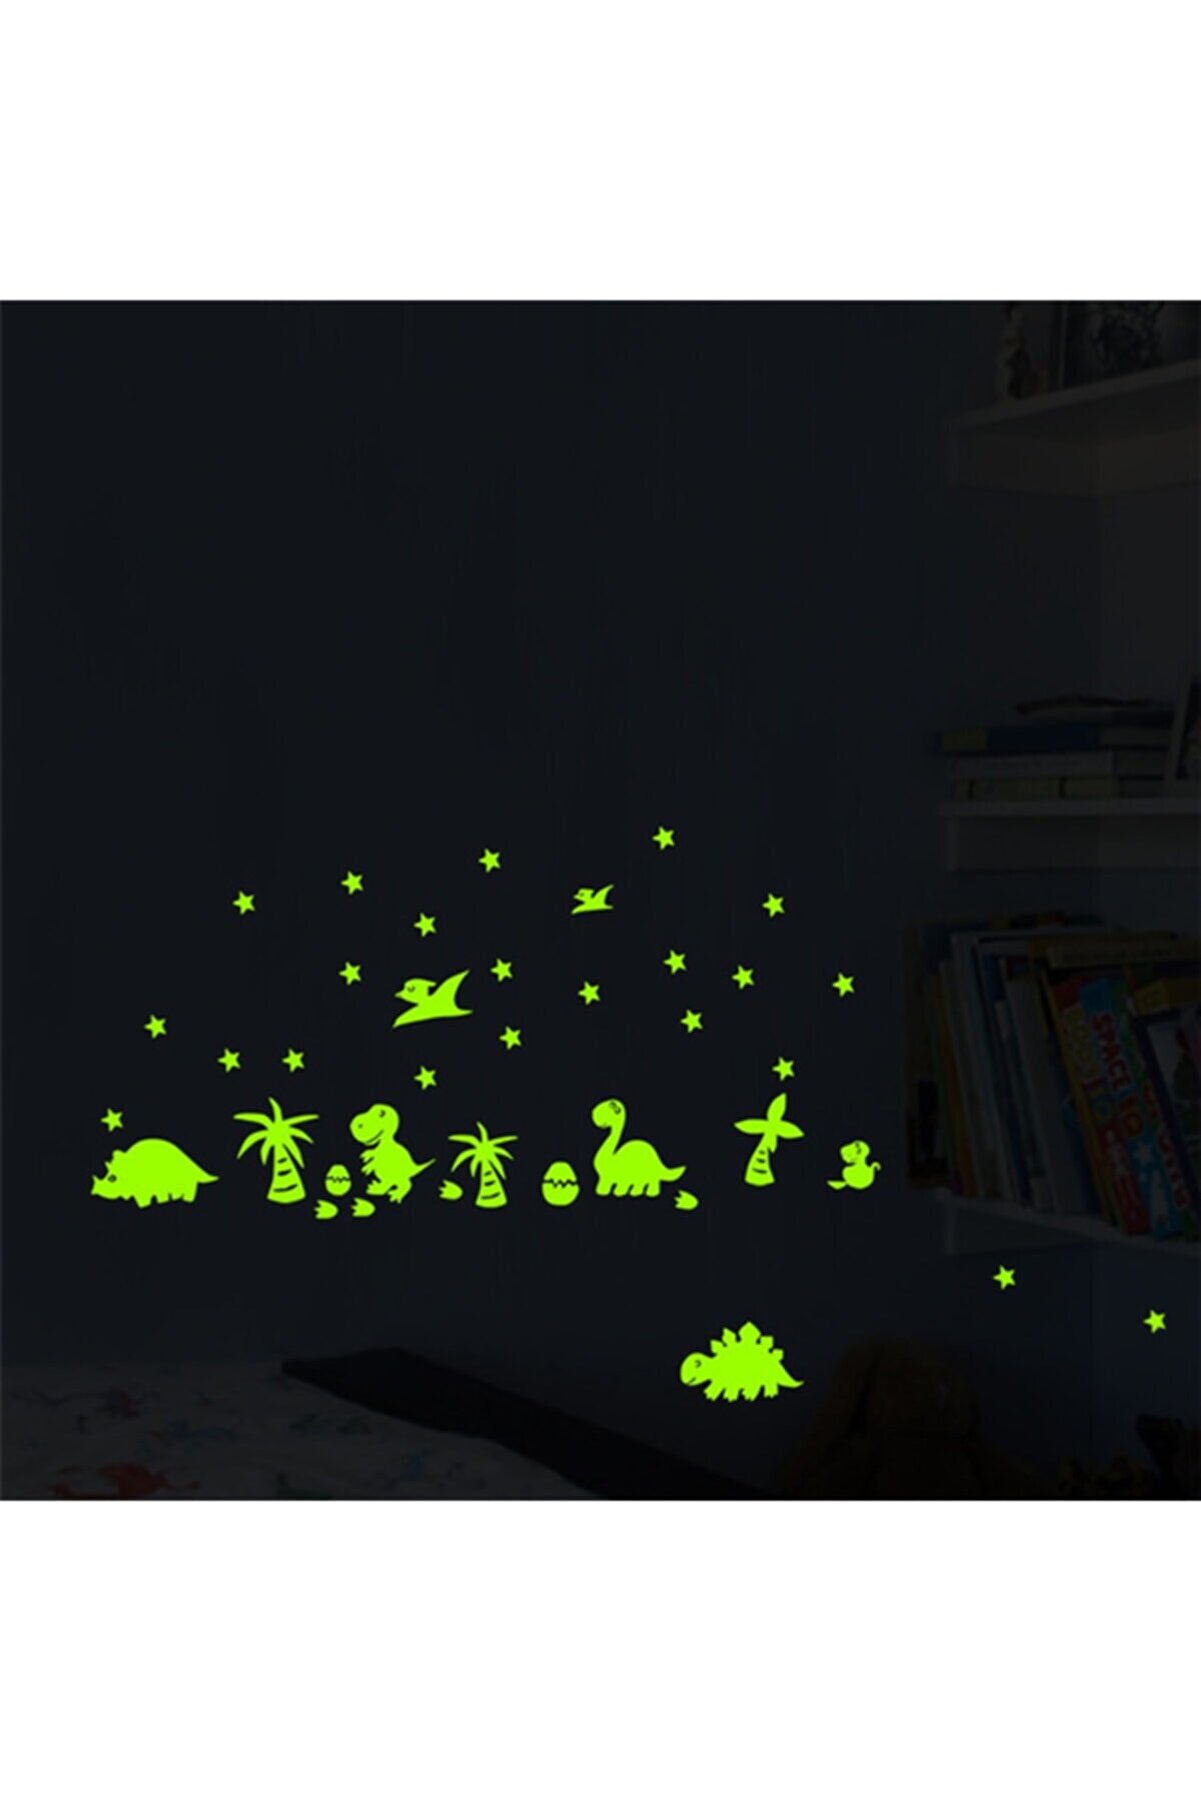 DEZ Karanlıkta Parlayan Dinozor Ve Yumurtaları Yıldızlı Çocuk Odası Duvar Sticker